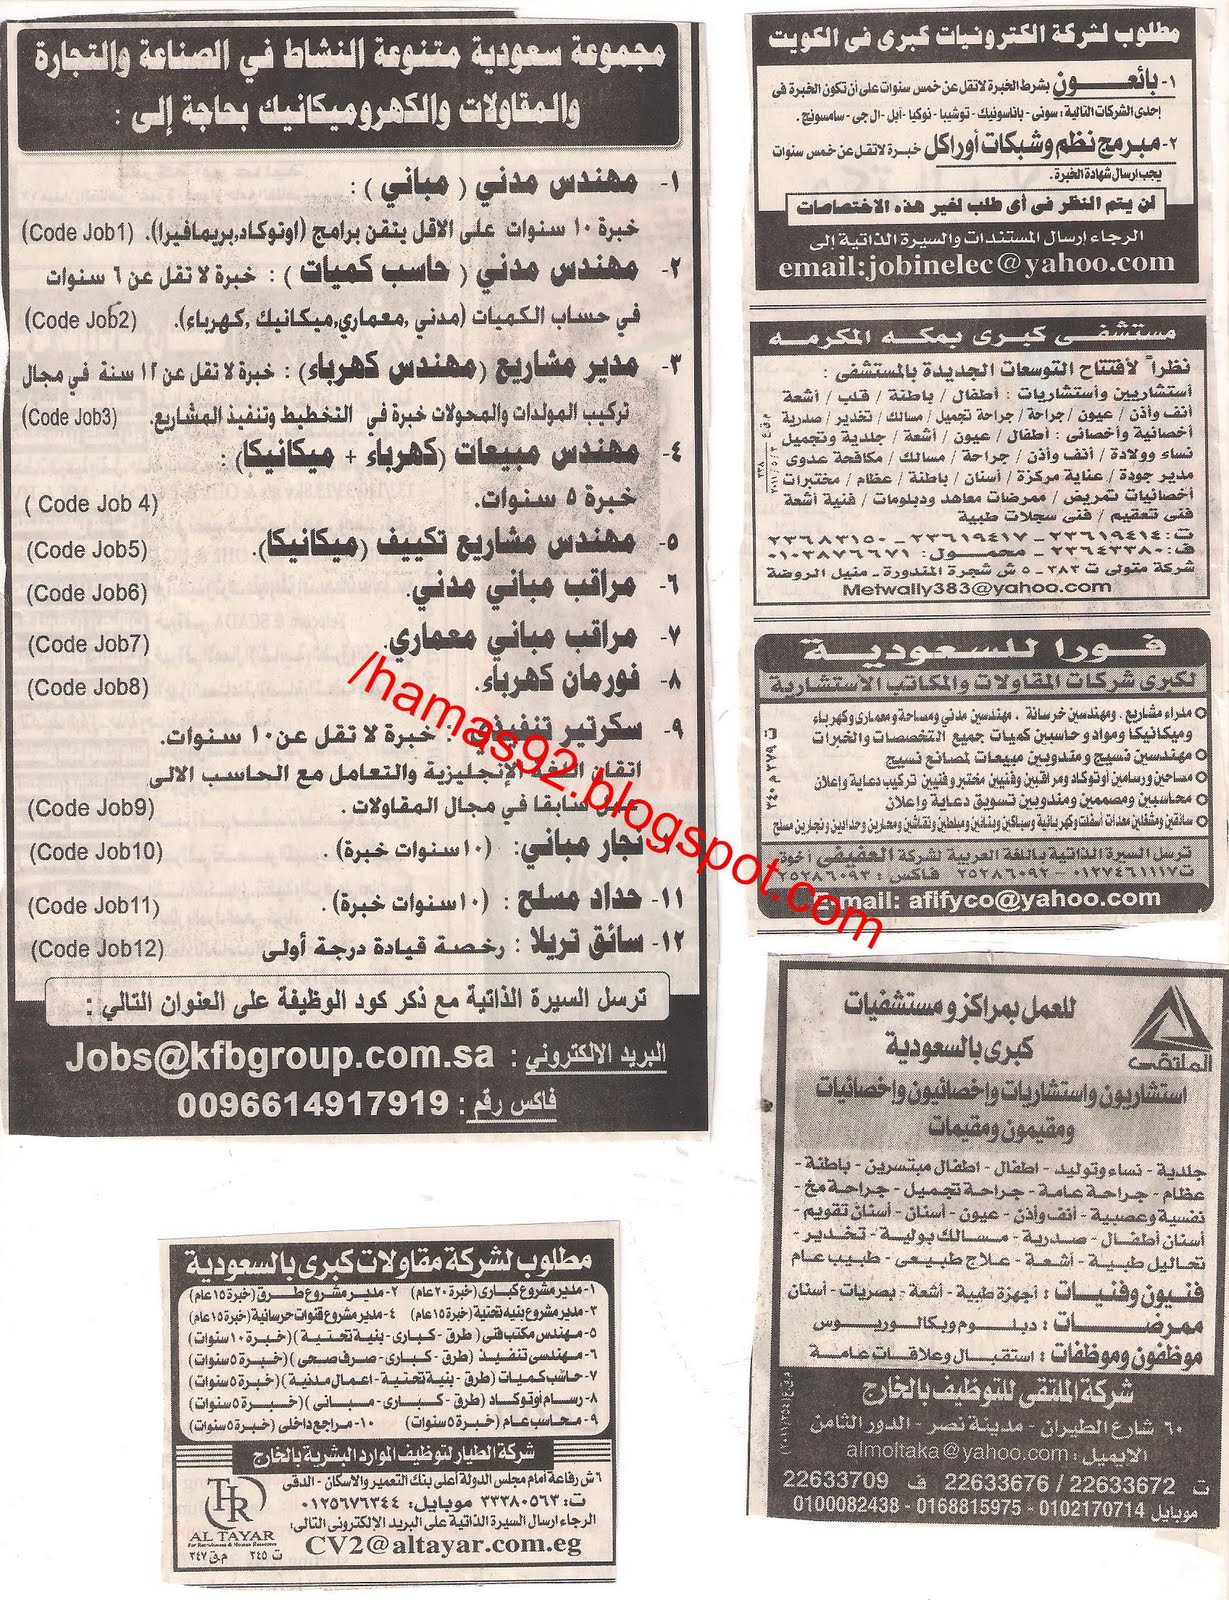 وظائف السعودية من جريدة الاهرام الاسبوعى الجمعة 6 مايو 2011 Picture+014